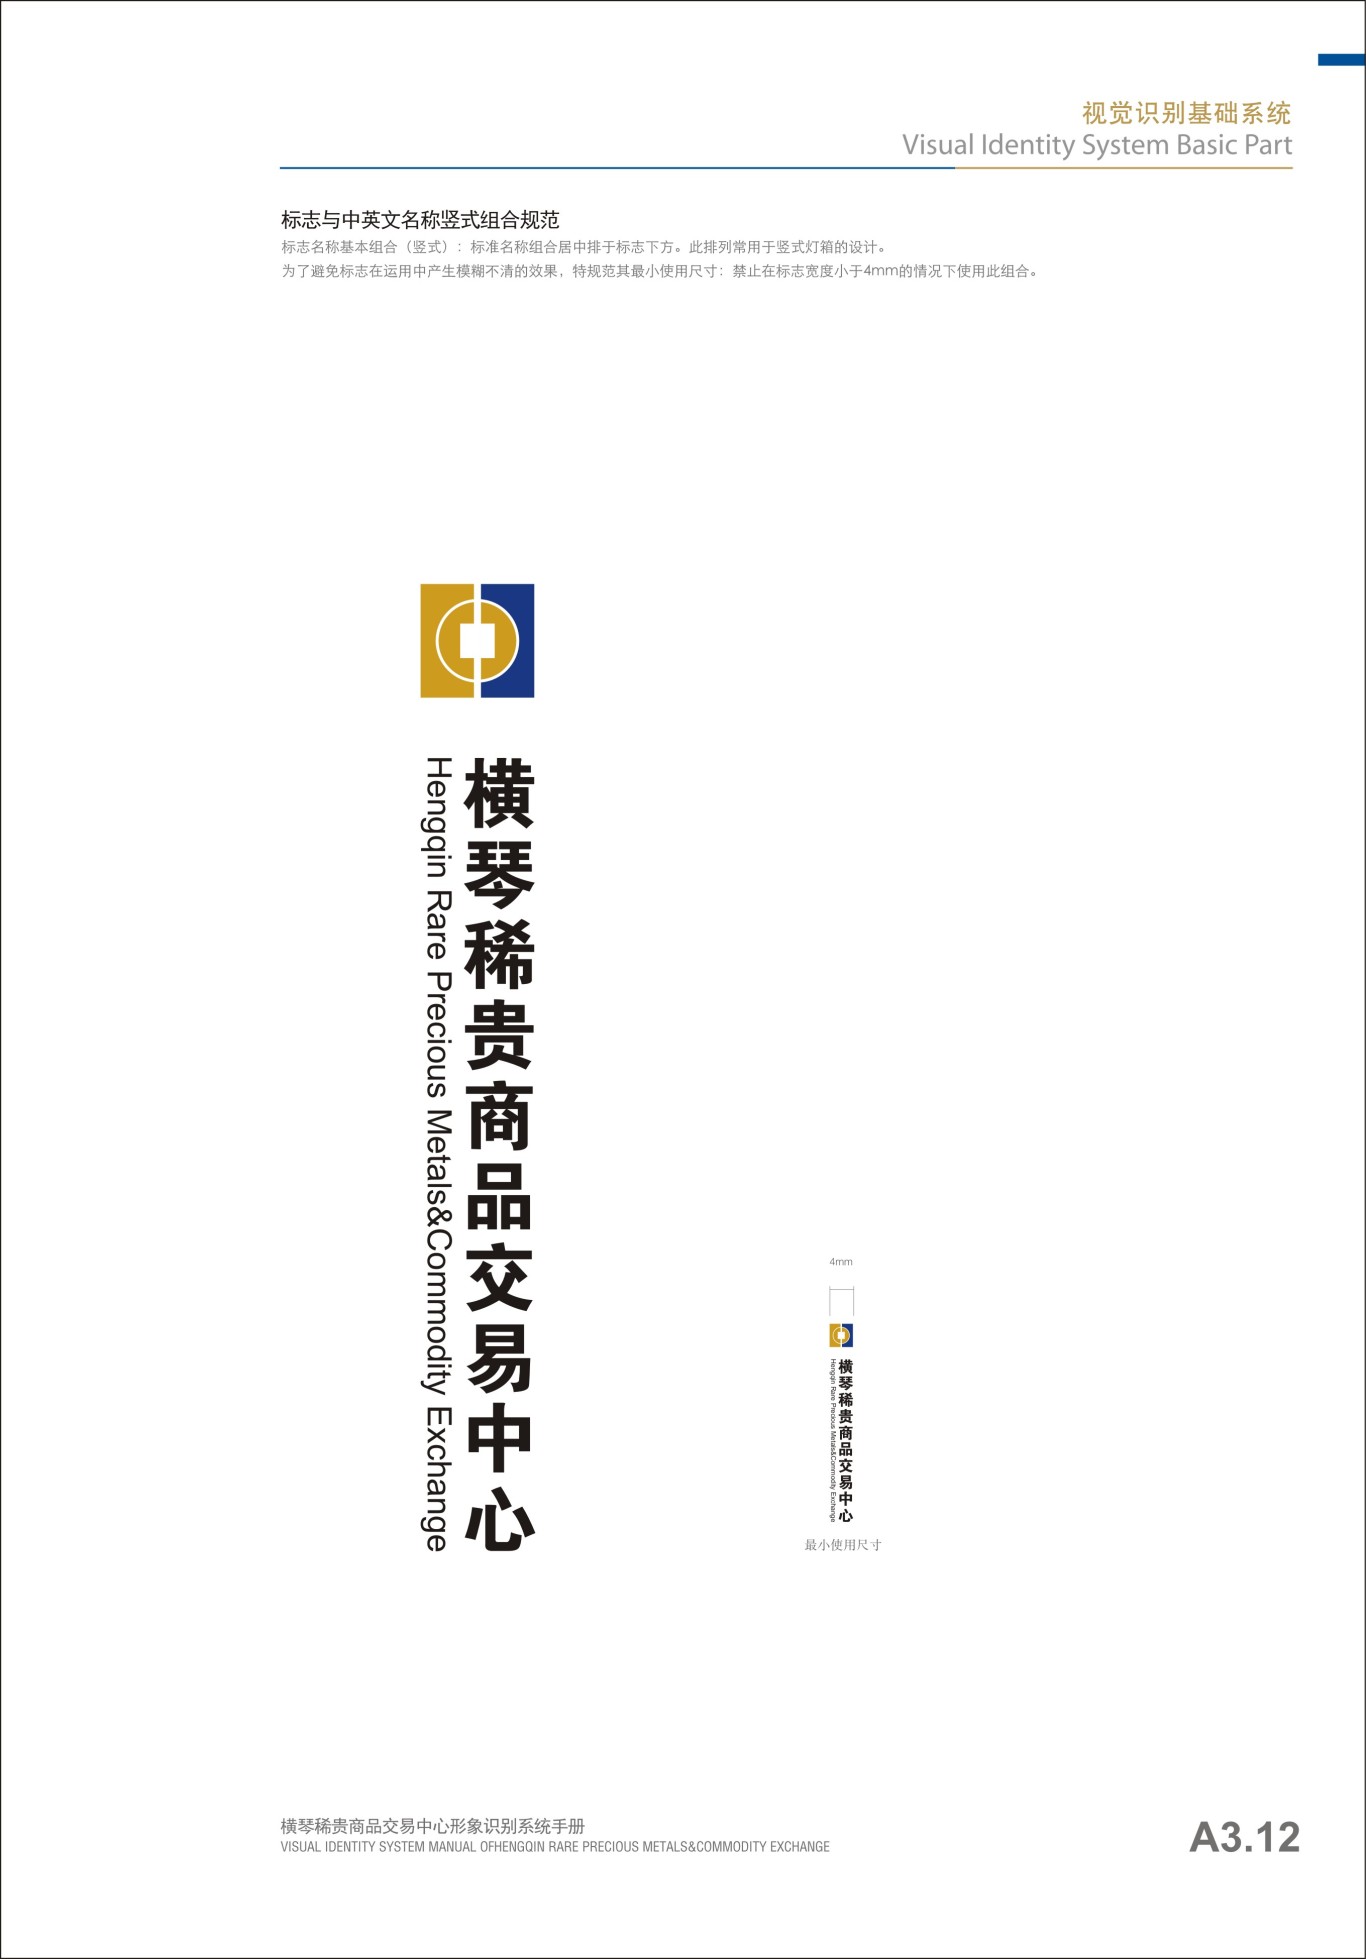 貴金屬行業橫琴稀貴VI手冊設計圖11